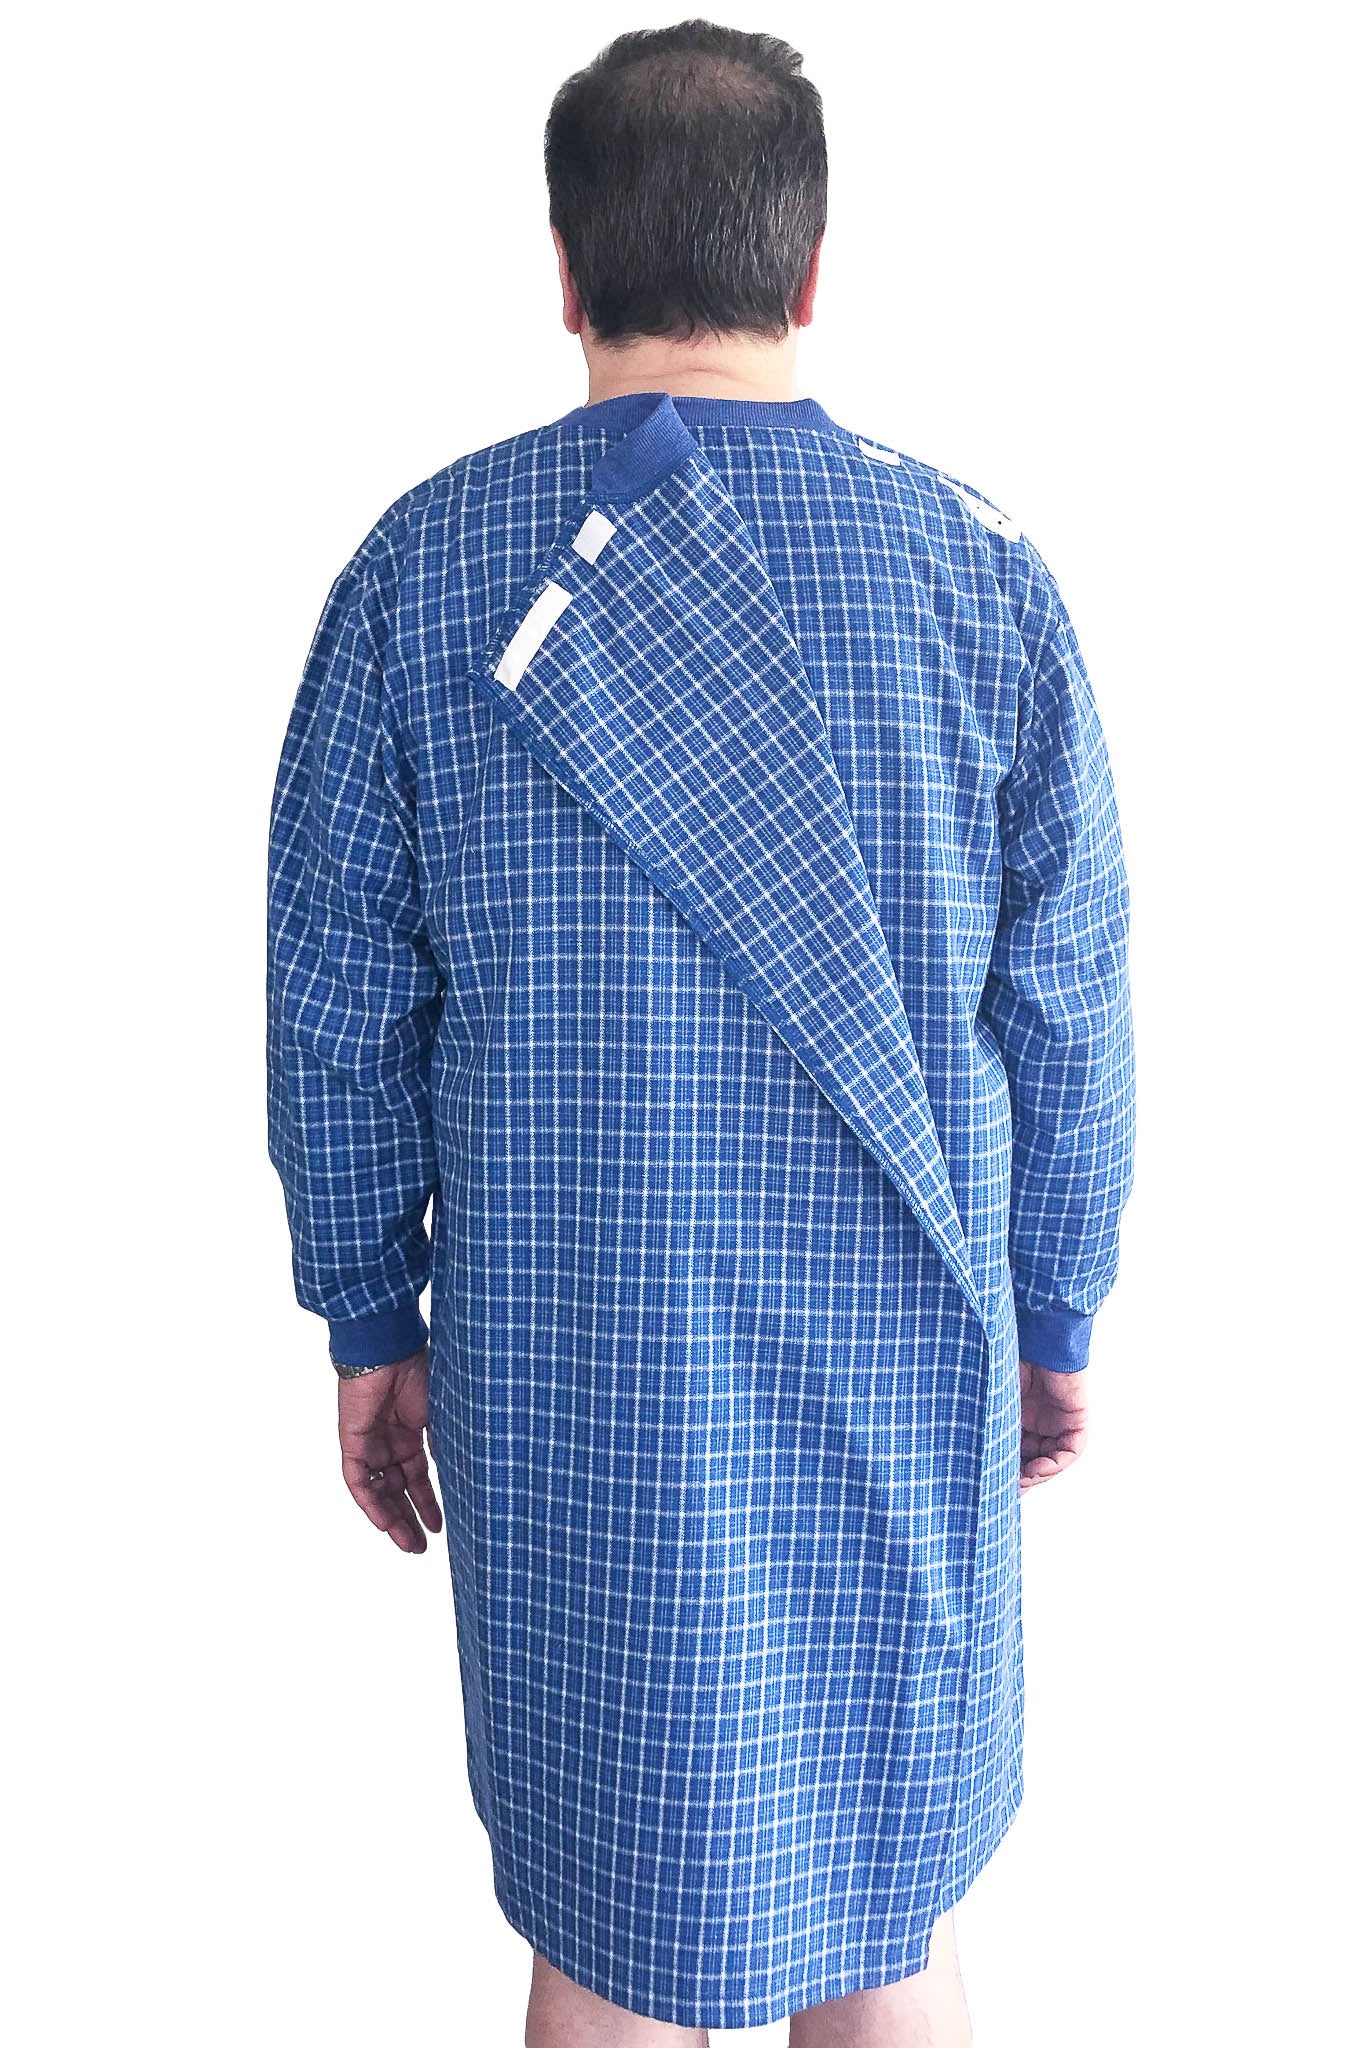 Nightshirt for Men - Blue | Milo | Adaptive Clothing by Ovidis